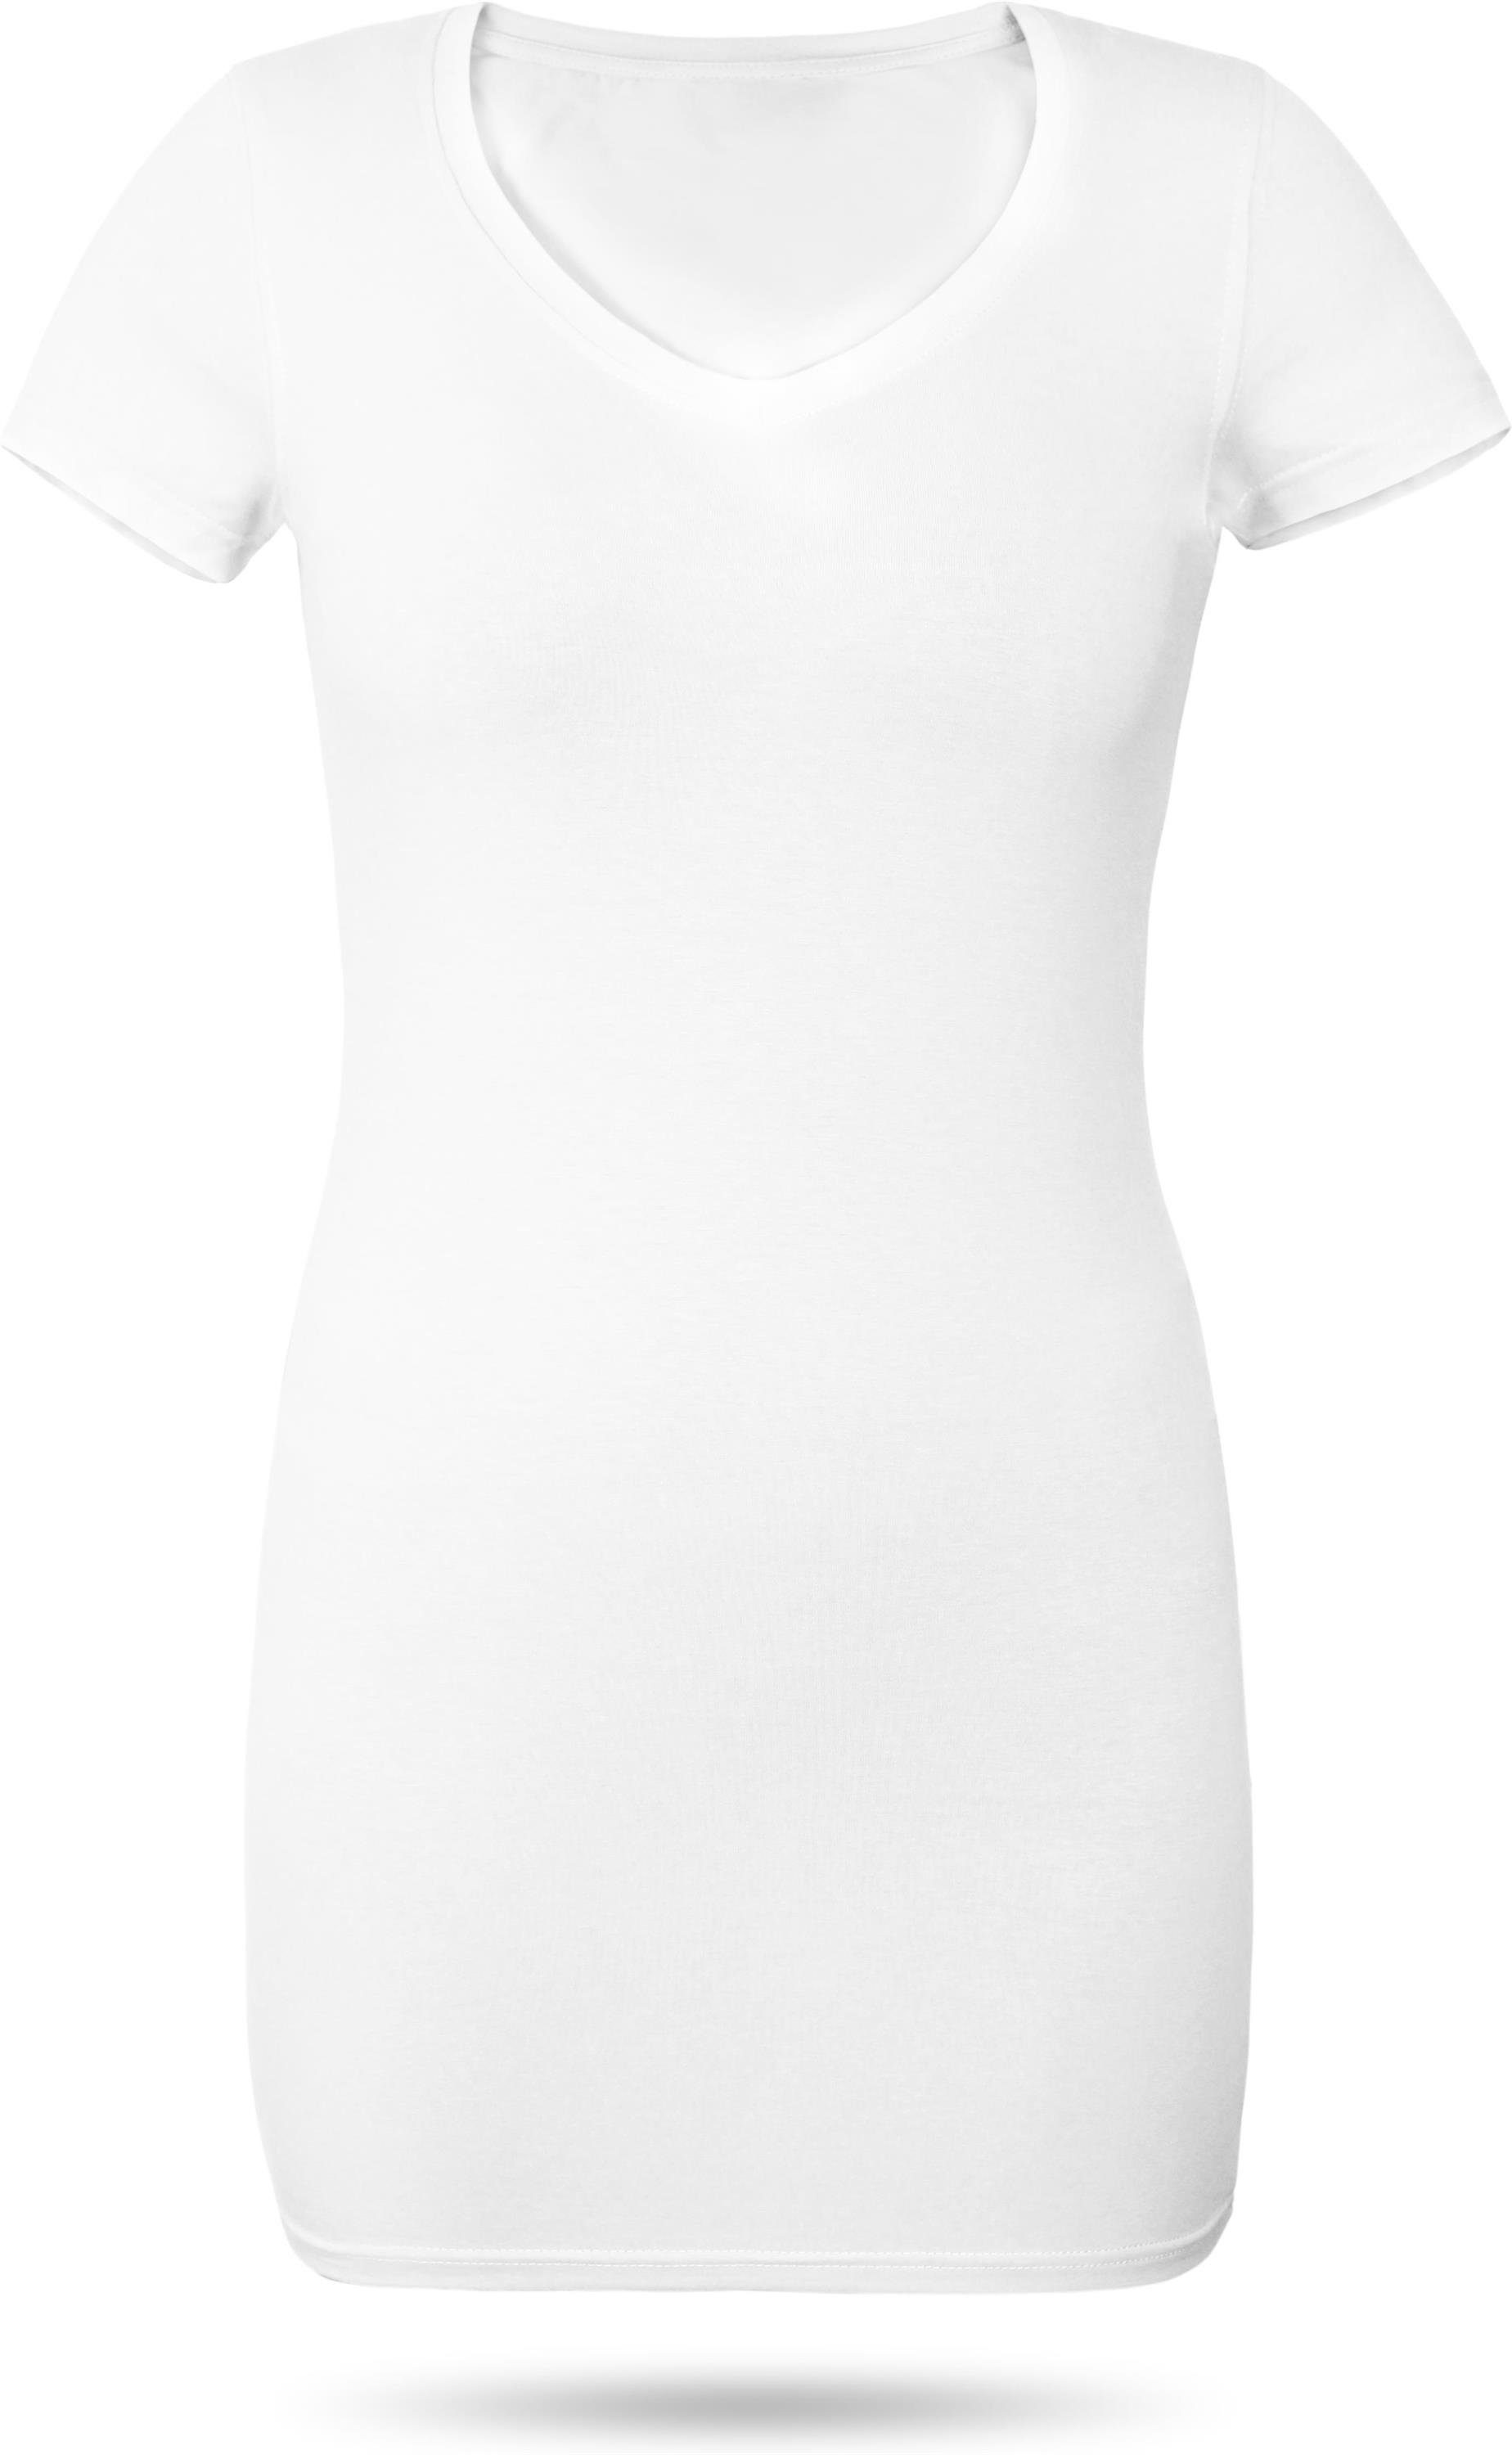 normani Kurzarmshirt Figurbetontes Weiß kurzarm Basic V-Ausschnitt Damen Shirt mit T-Shirt Siena